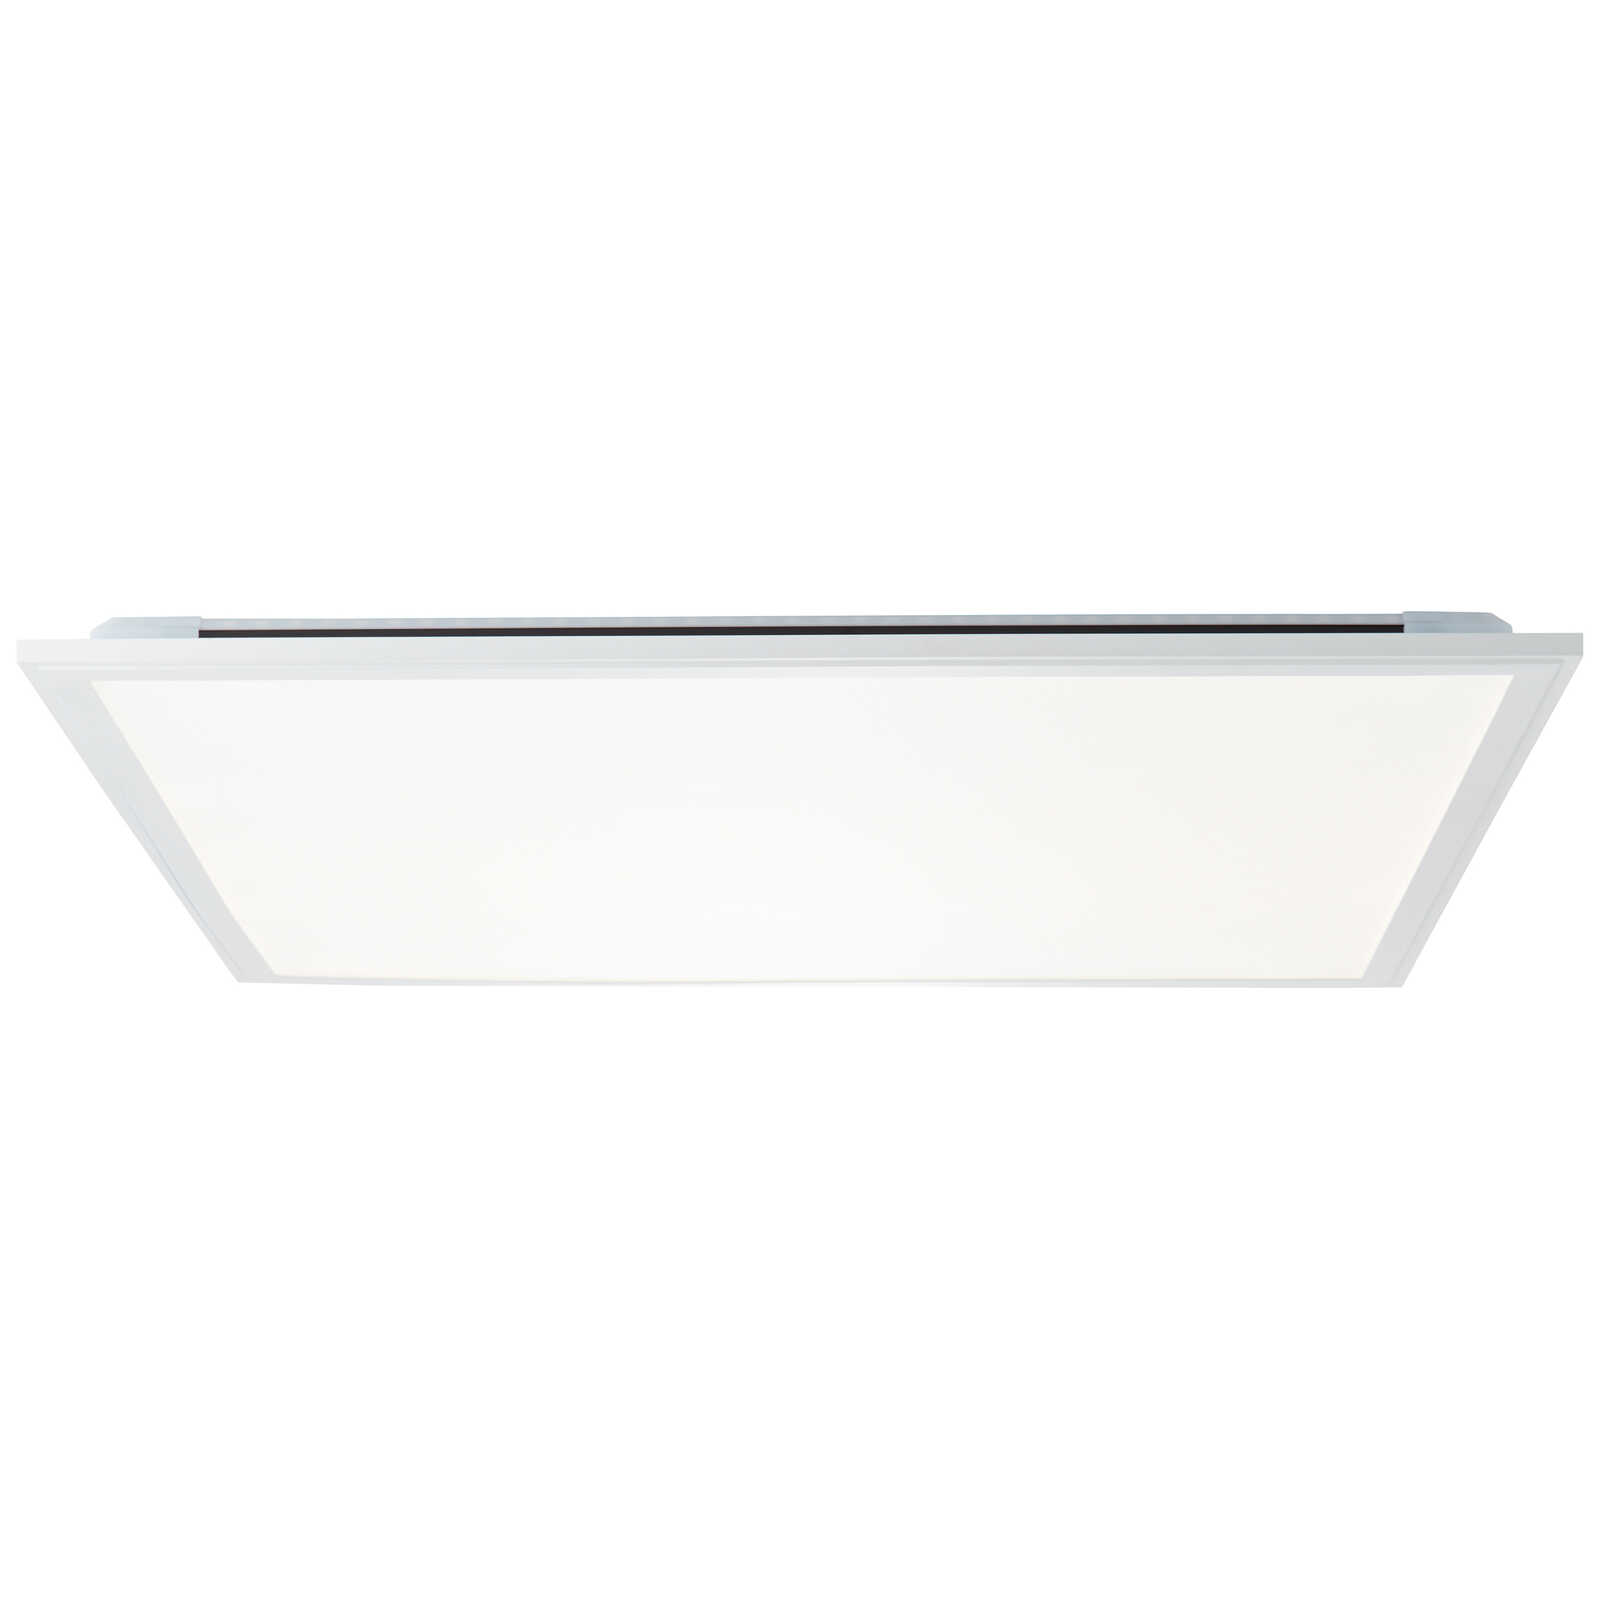             Plastic ceiling light - Albert 3 - White
        